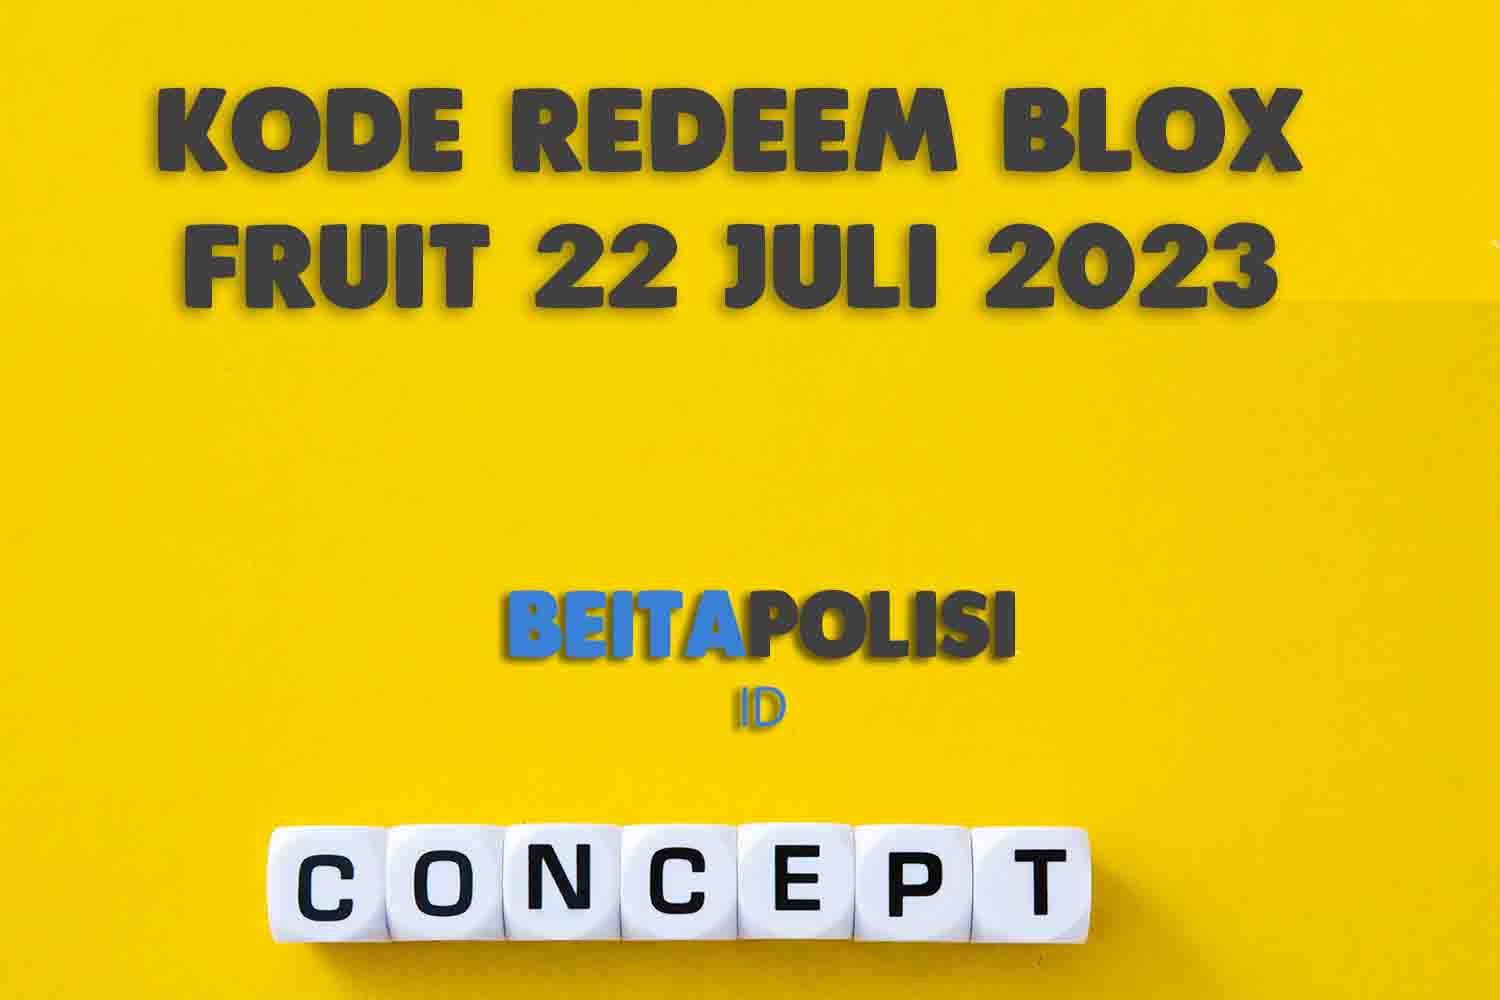 Kode Redeem Blox Fruit 22 Juli 2023